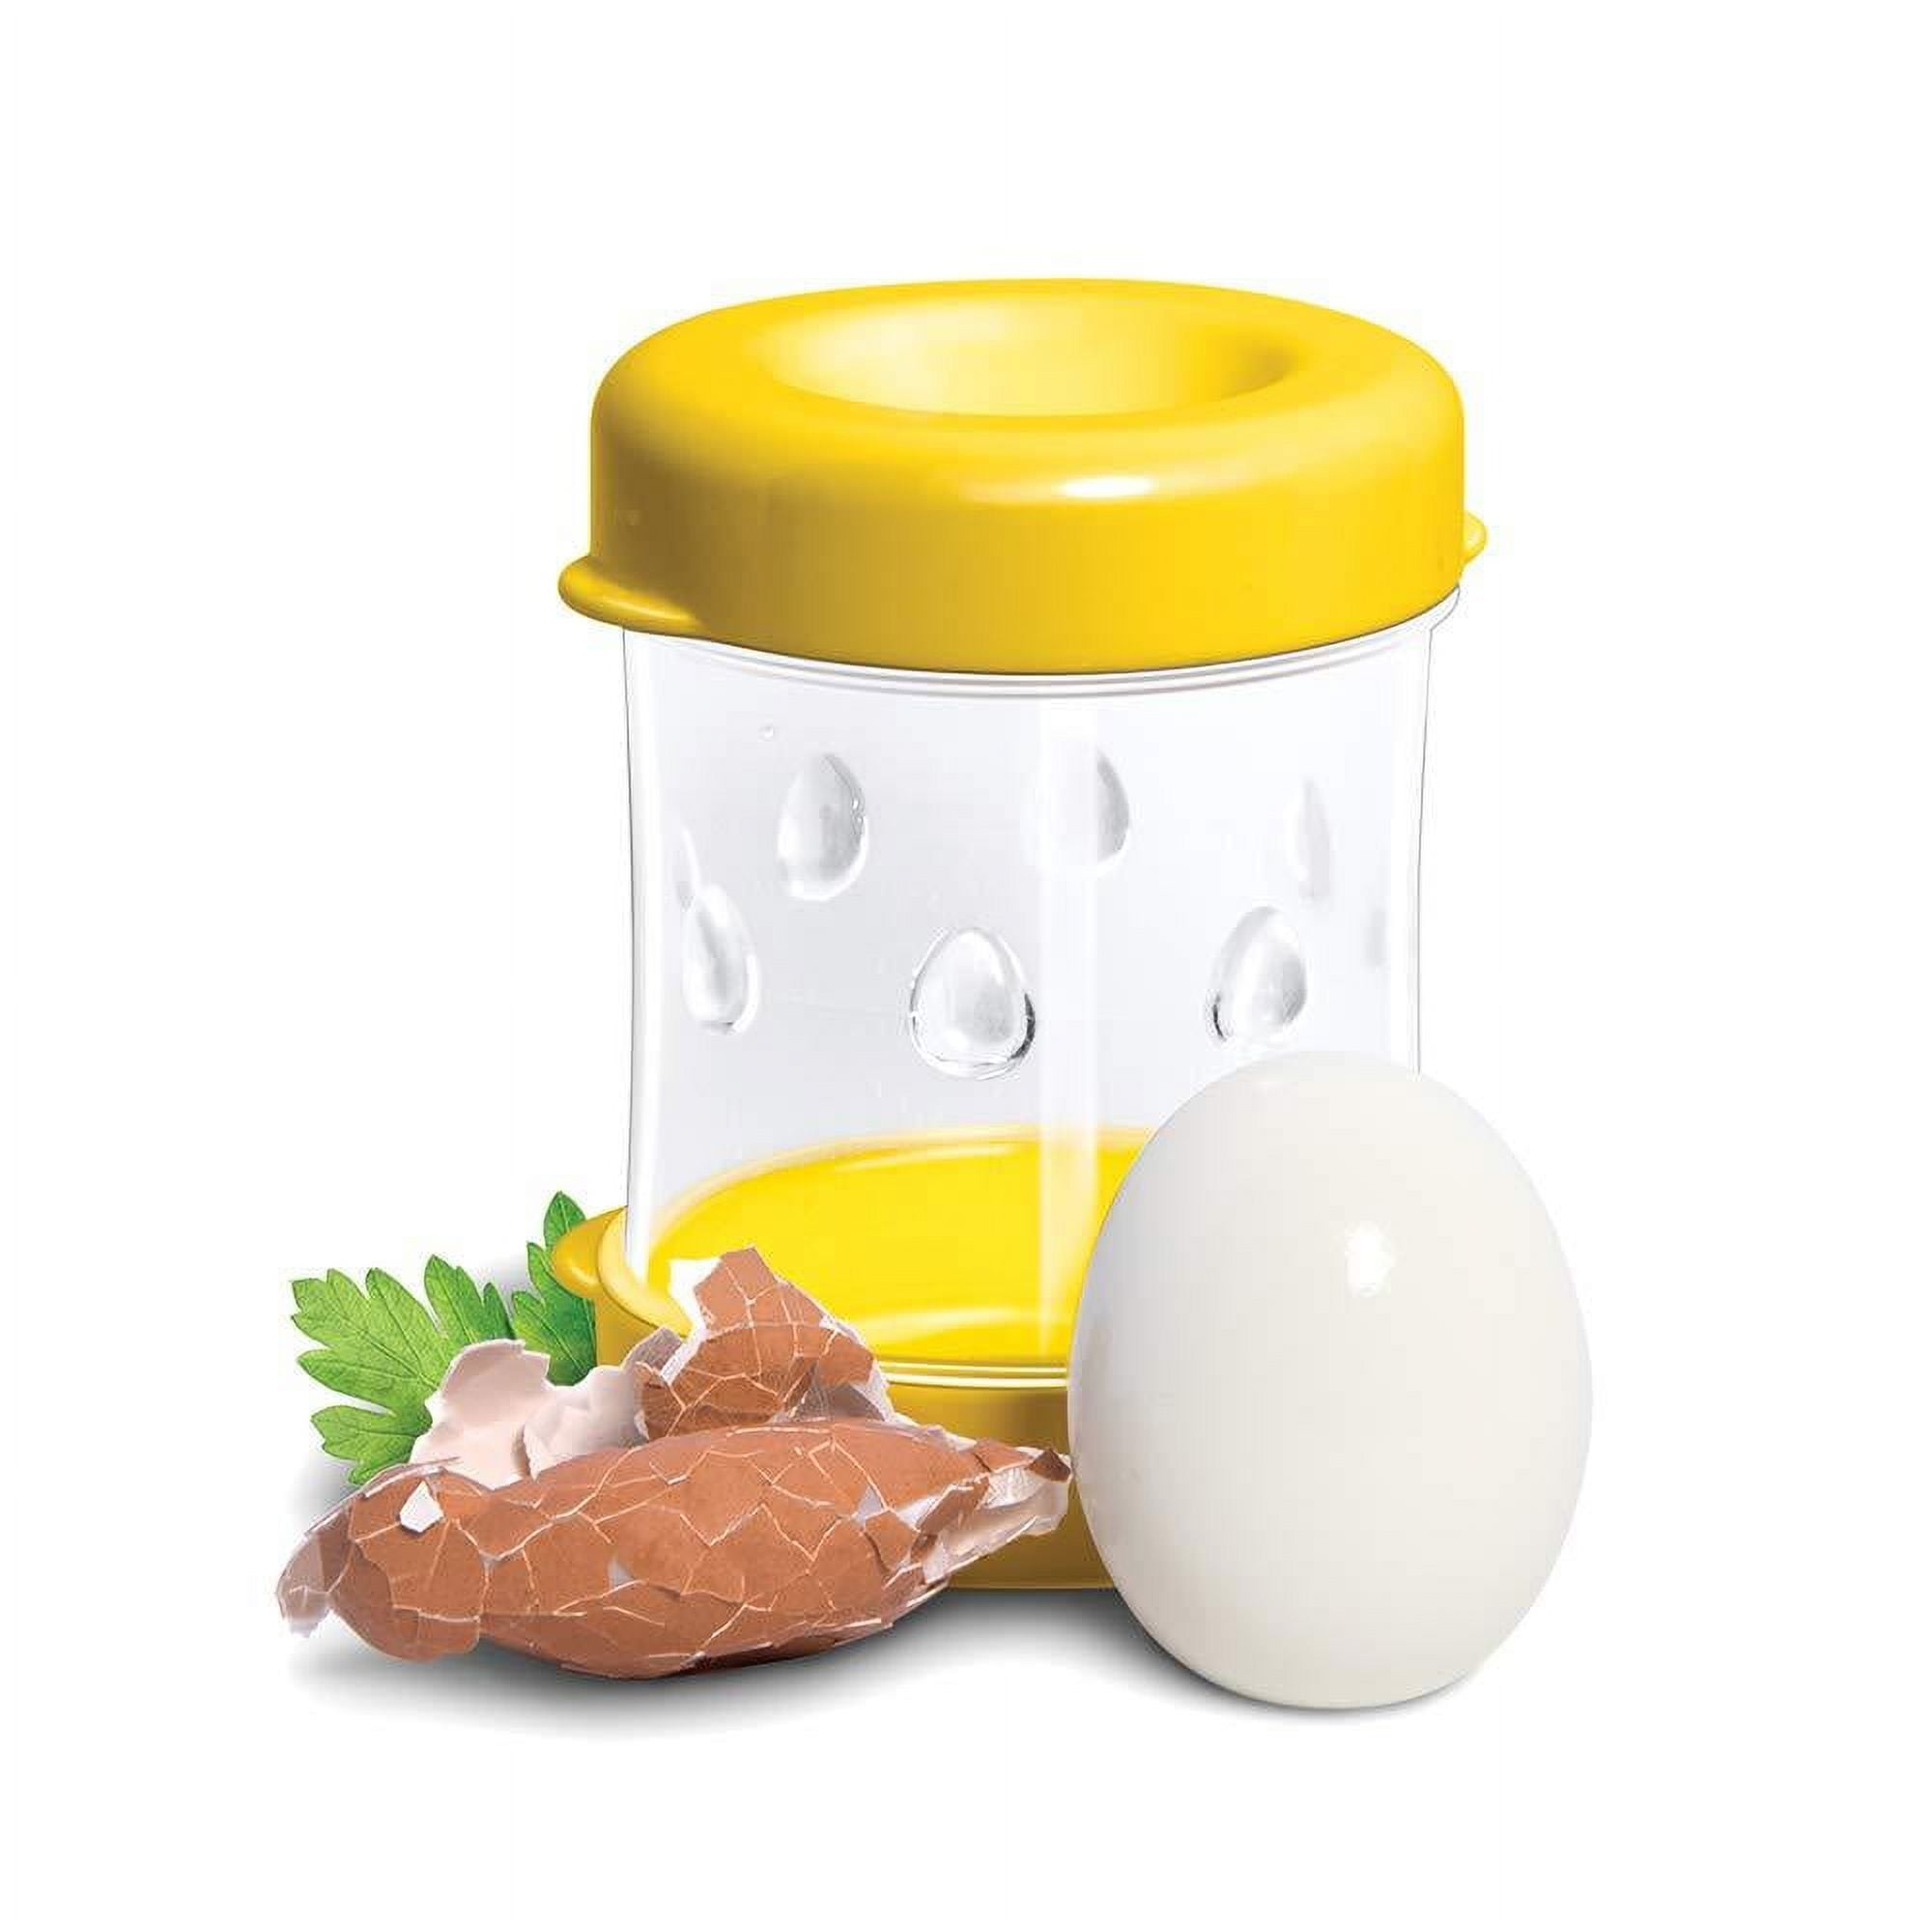 The Negg Boiled Egg Peeler - Cutler's